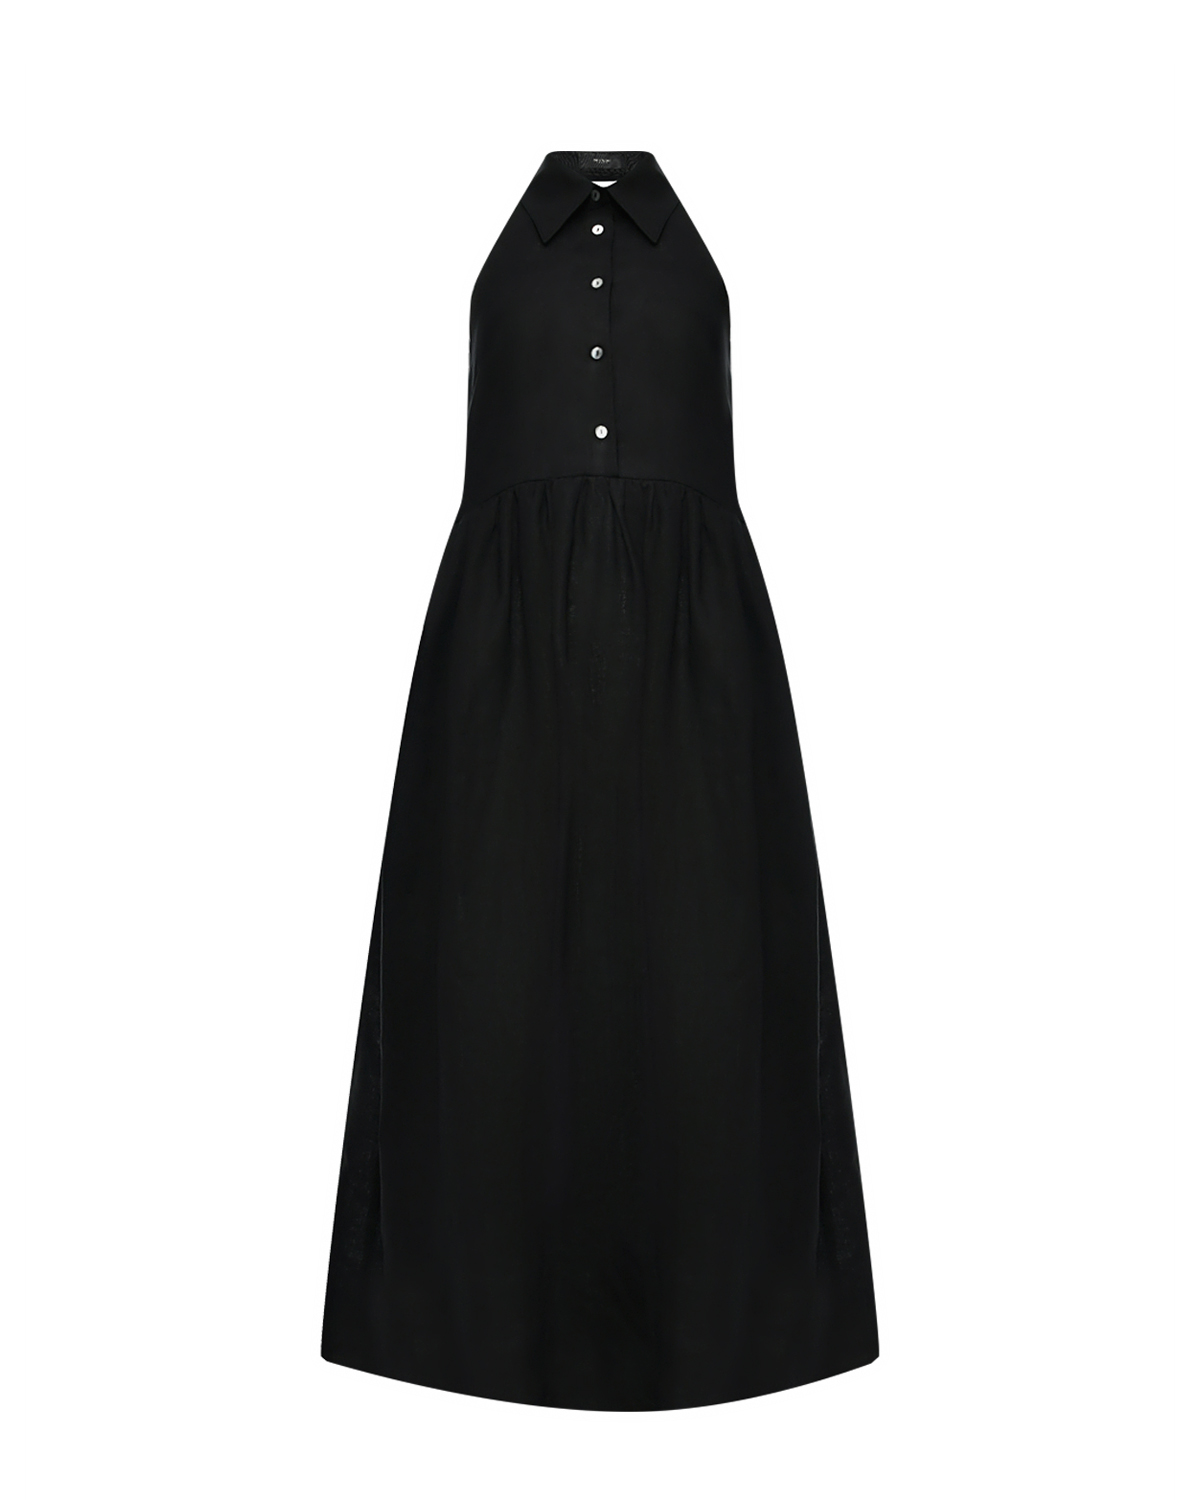 Льняное платье. черное SHADE